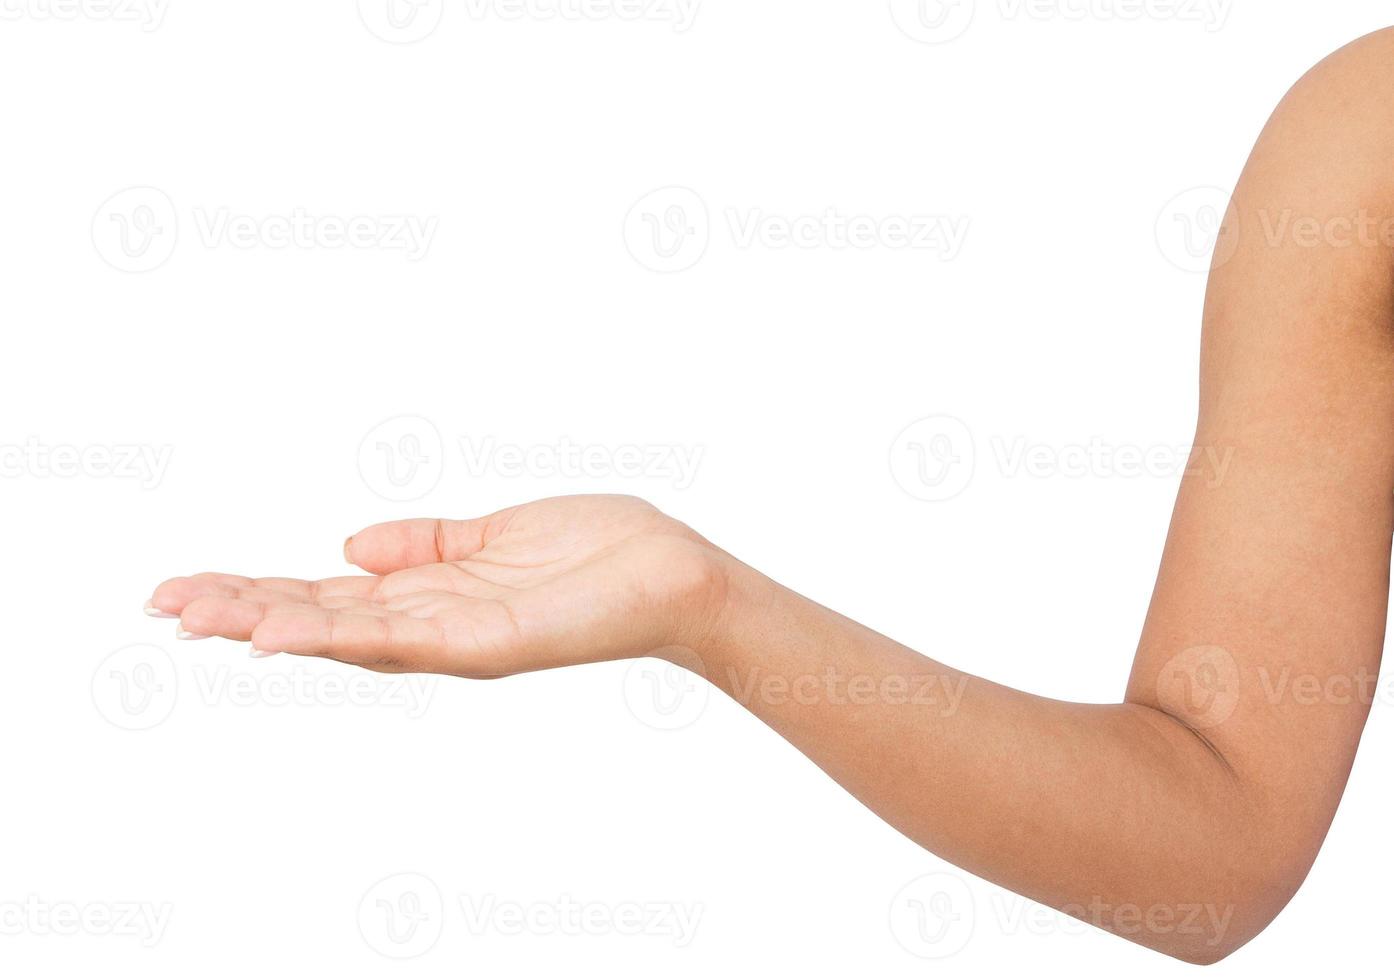 aprire la mano di una donna afroamericana, palmo in su isolato su sfondo bianco foto